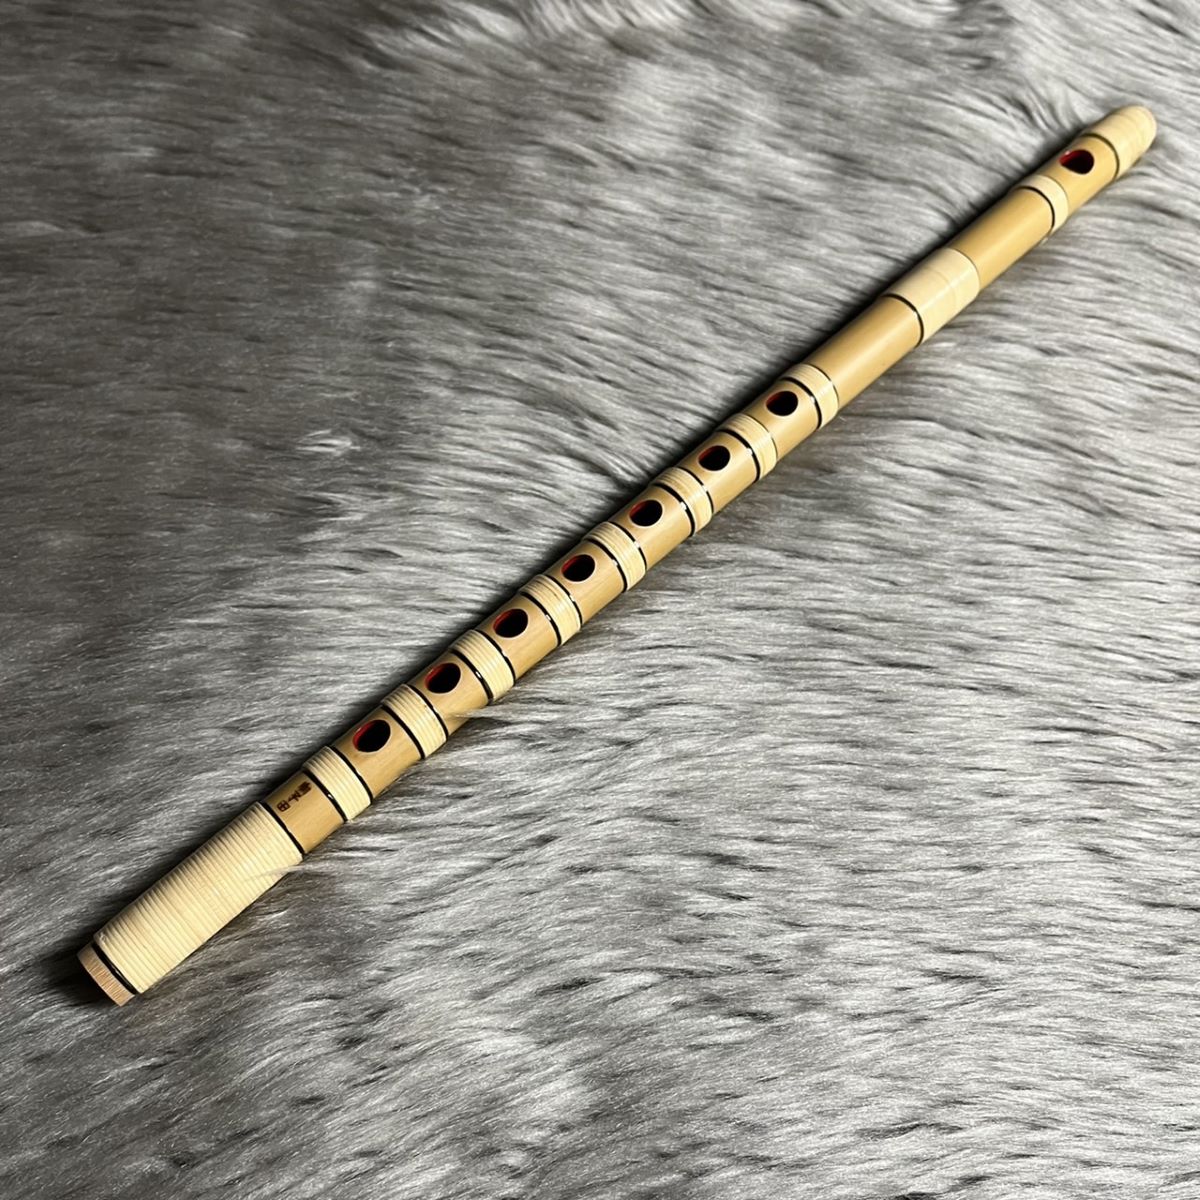 よく鳴る‼️竹製篠笛(笛工房 蒼) 【七本調子 ドレミ調】 - 和楽器